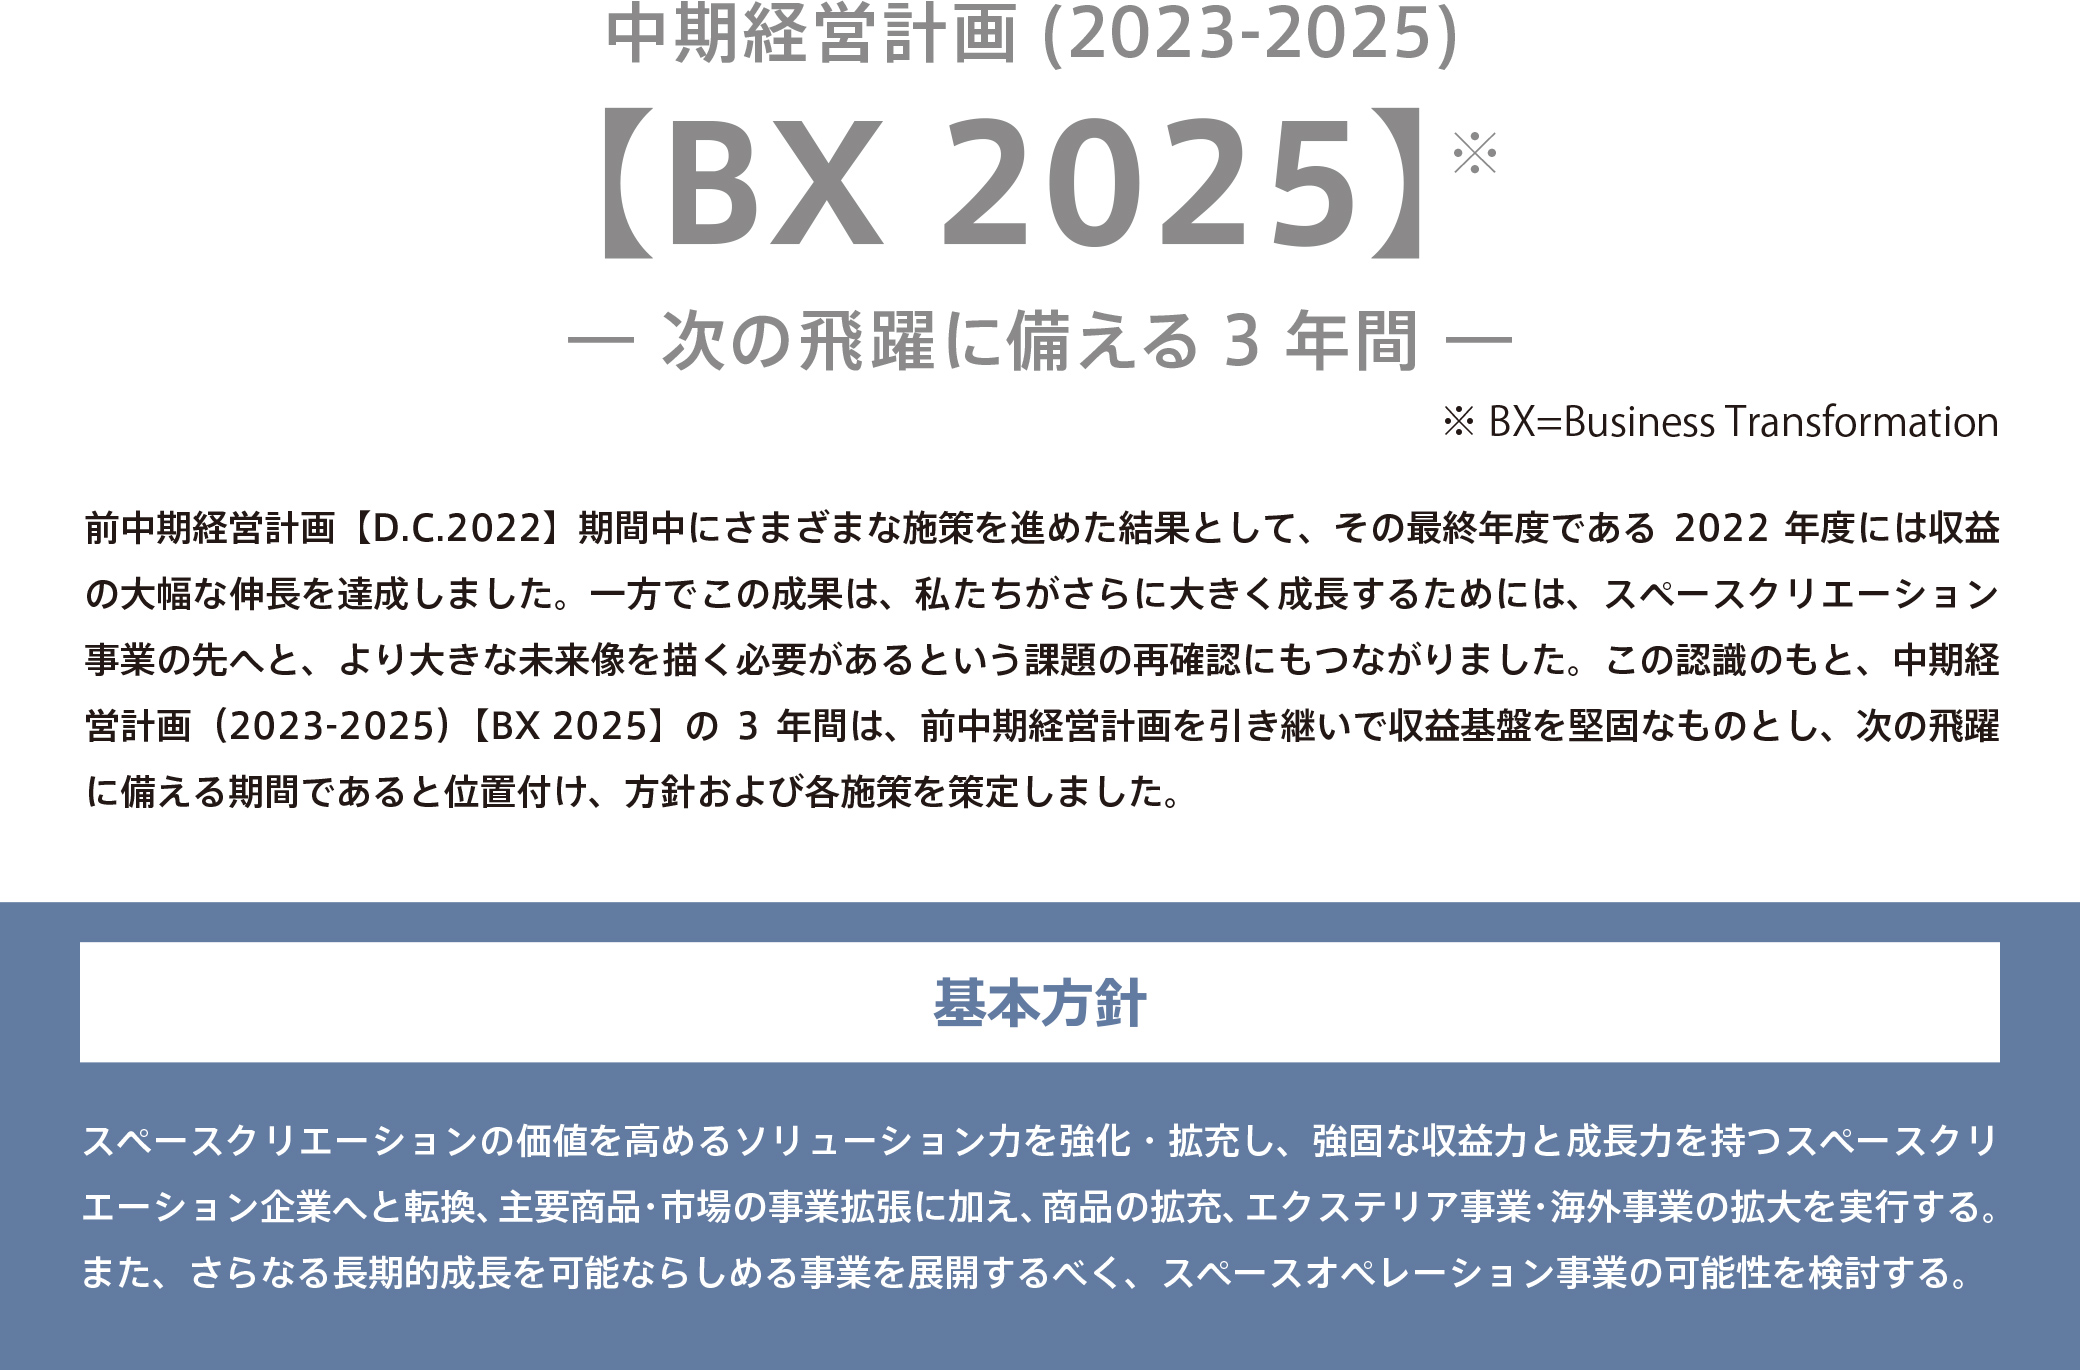 BX 2025